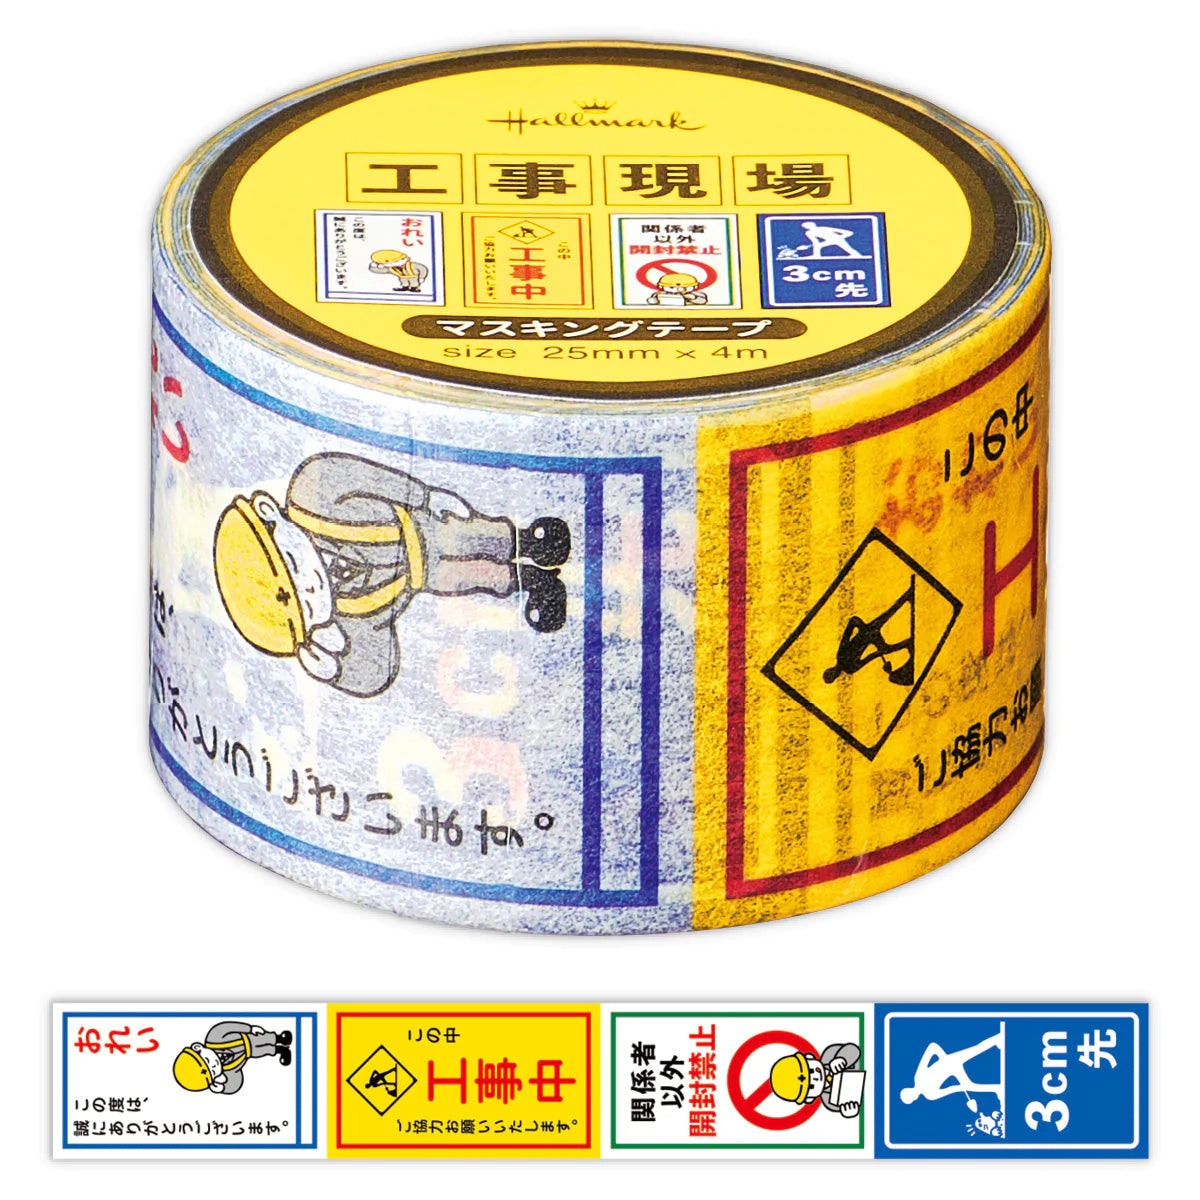 Masking tape made in Japan